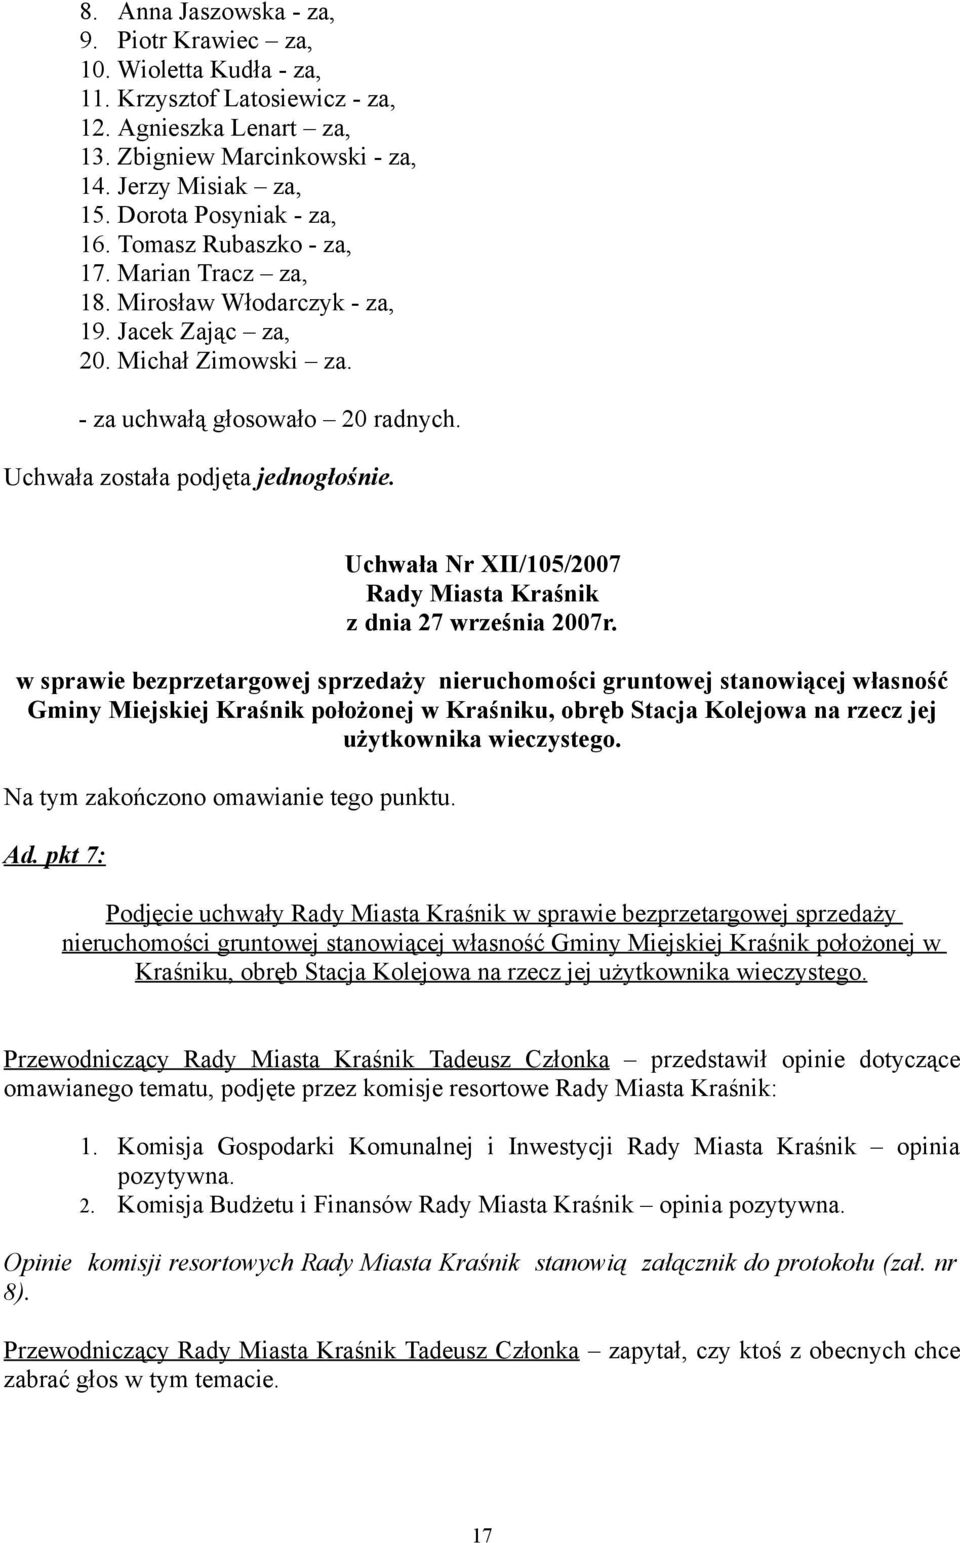 Uchwała została podjęta jednogłośnie. Uchwała Nr XII/105/2007 Rady Miasta Kraśnik z dnia 27 września 2007r.